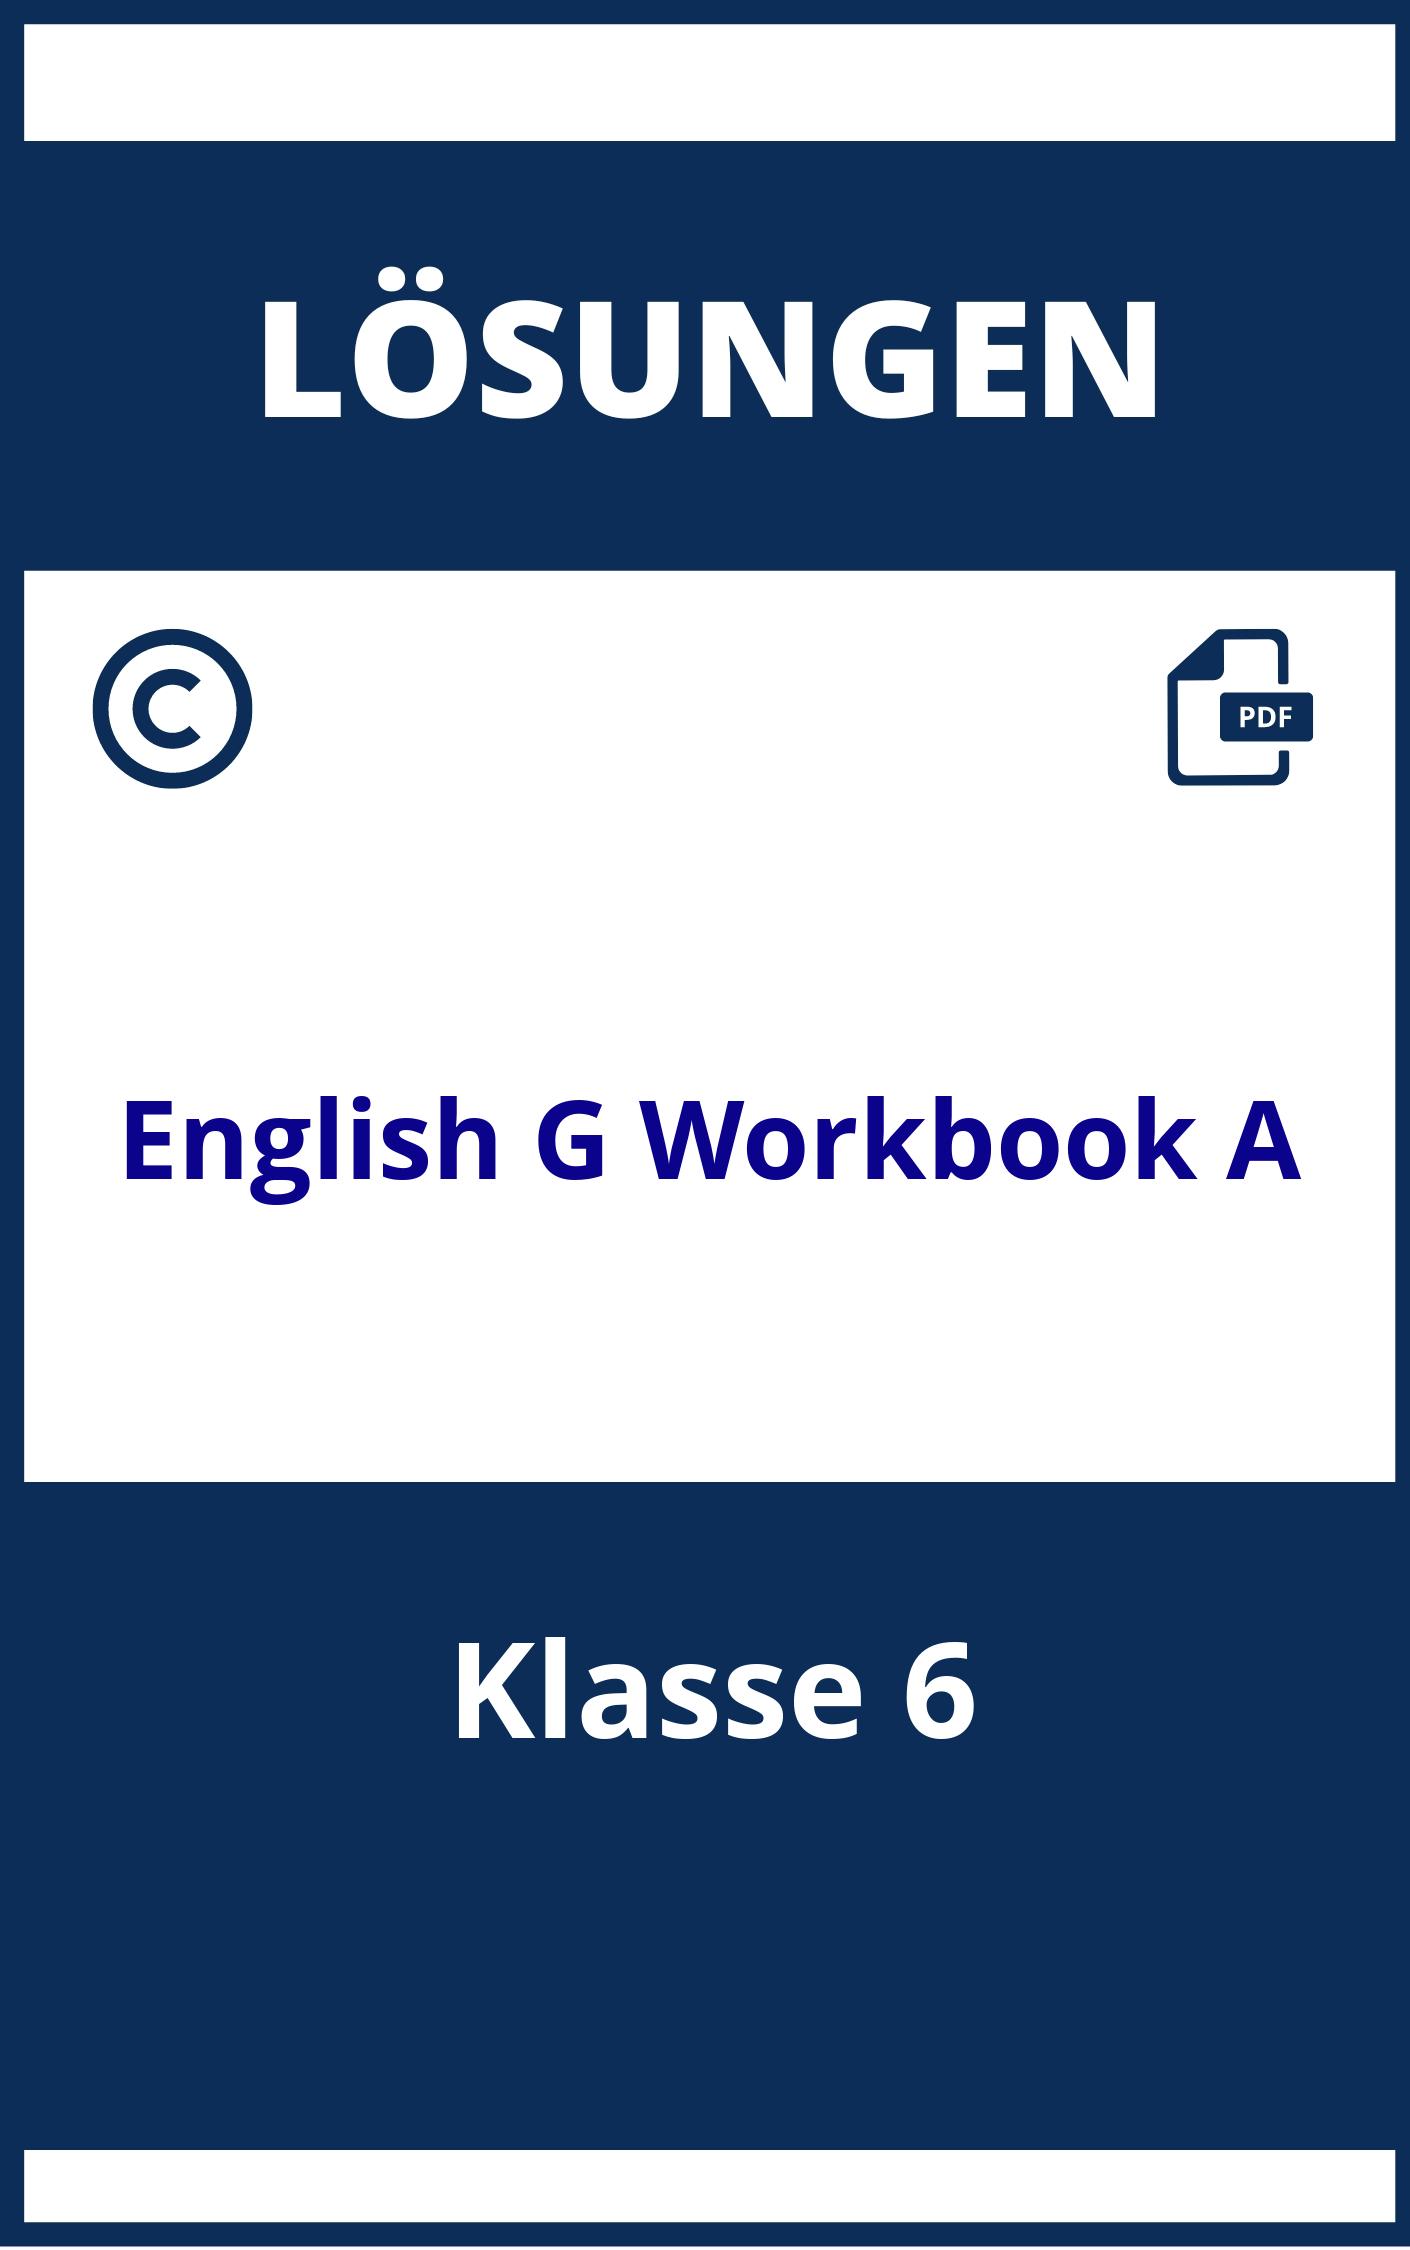 English G 21 Workbook A2 Lösungen Klasse 6